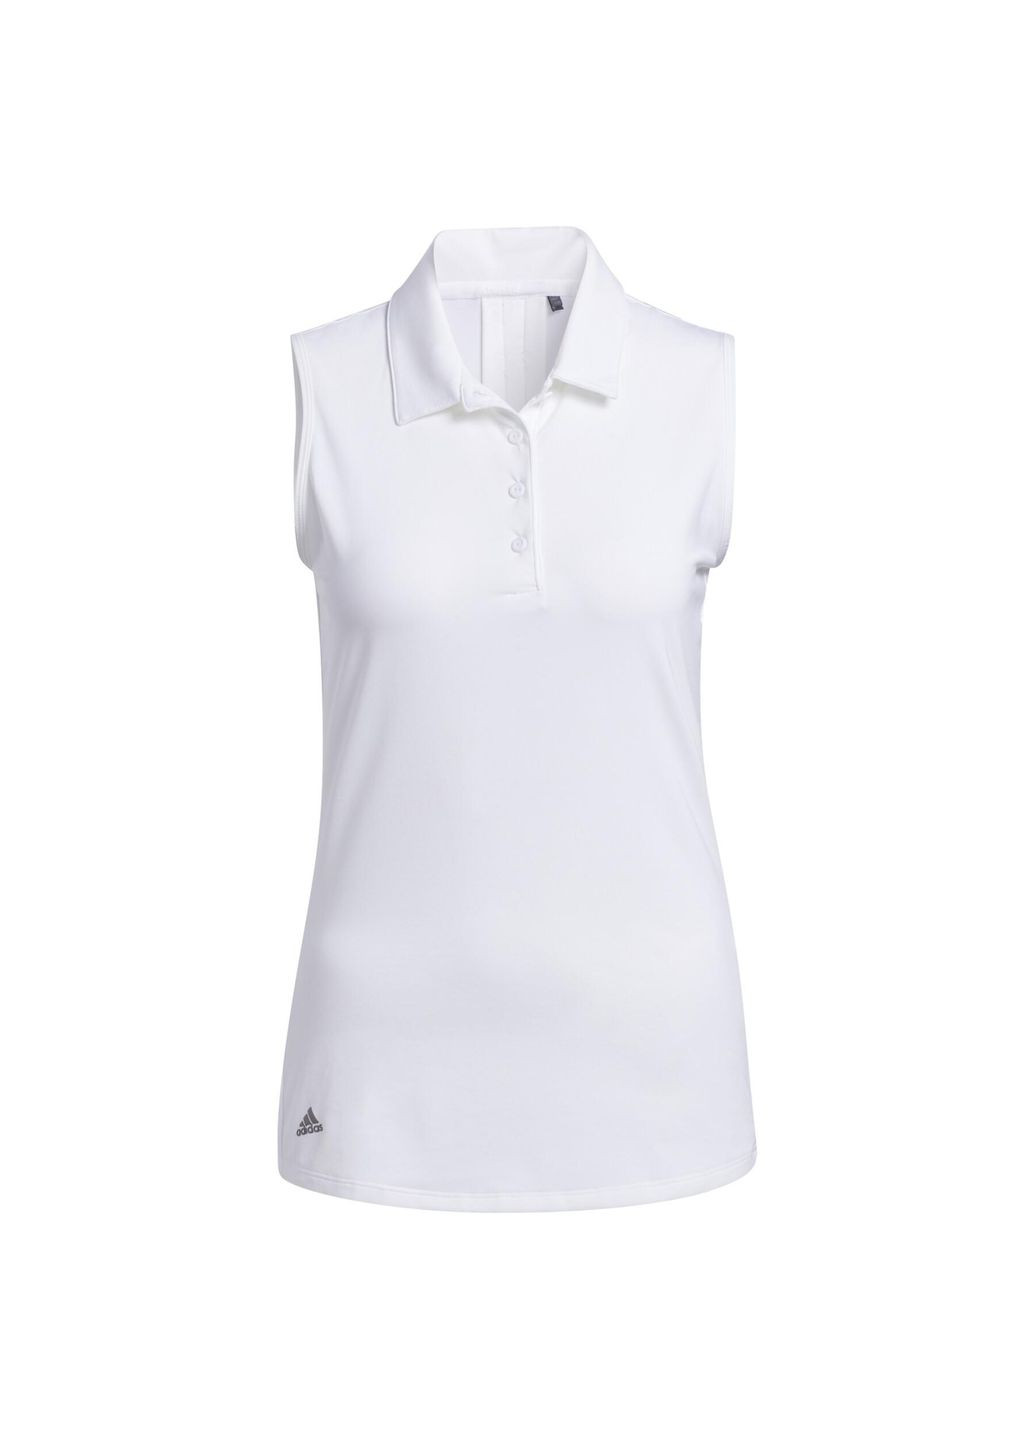 Белая летняя футболка поло без рукавов adidas Ultimate 365 Golf